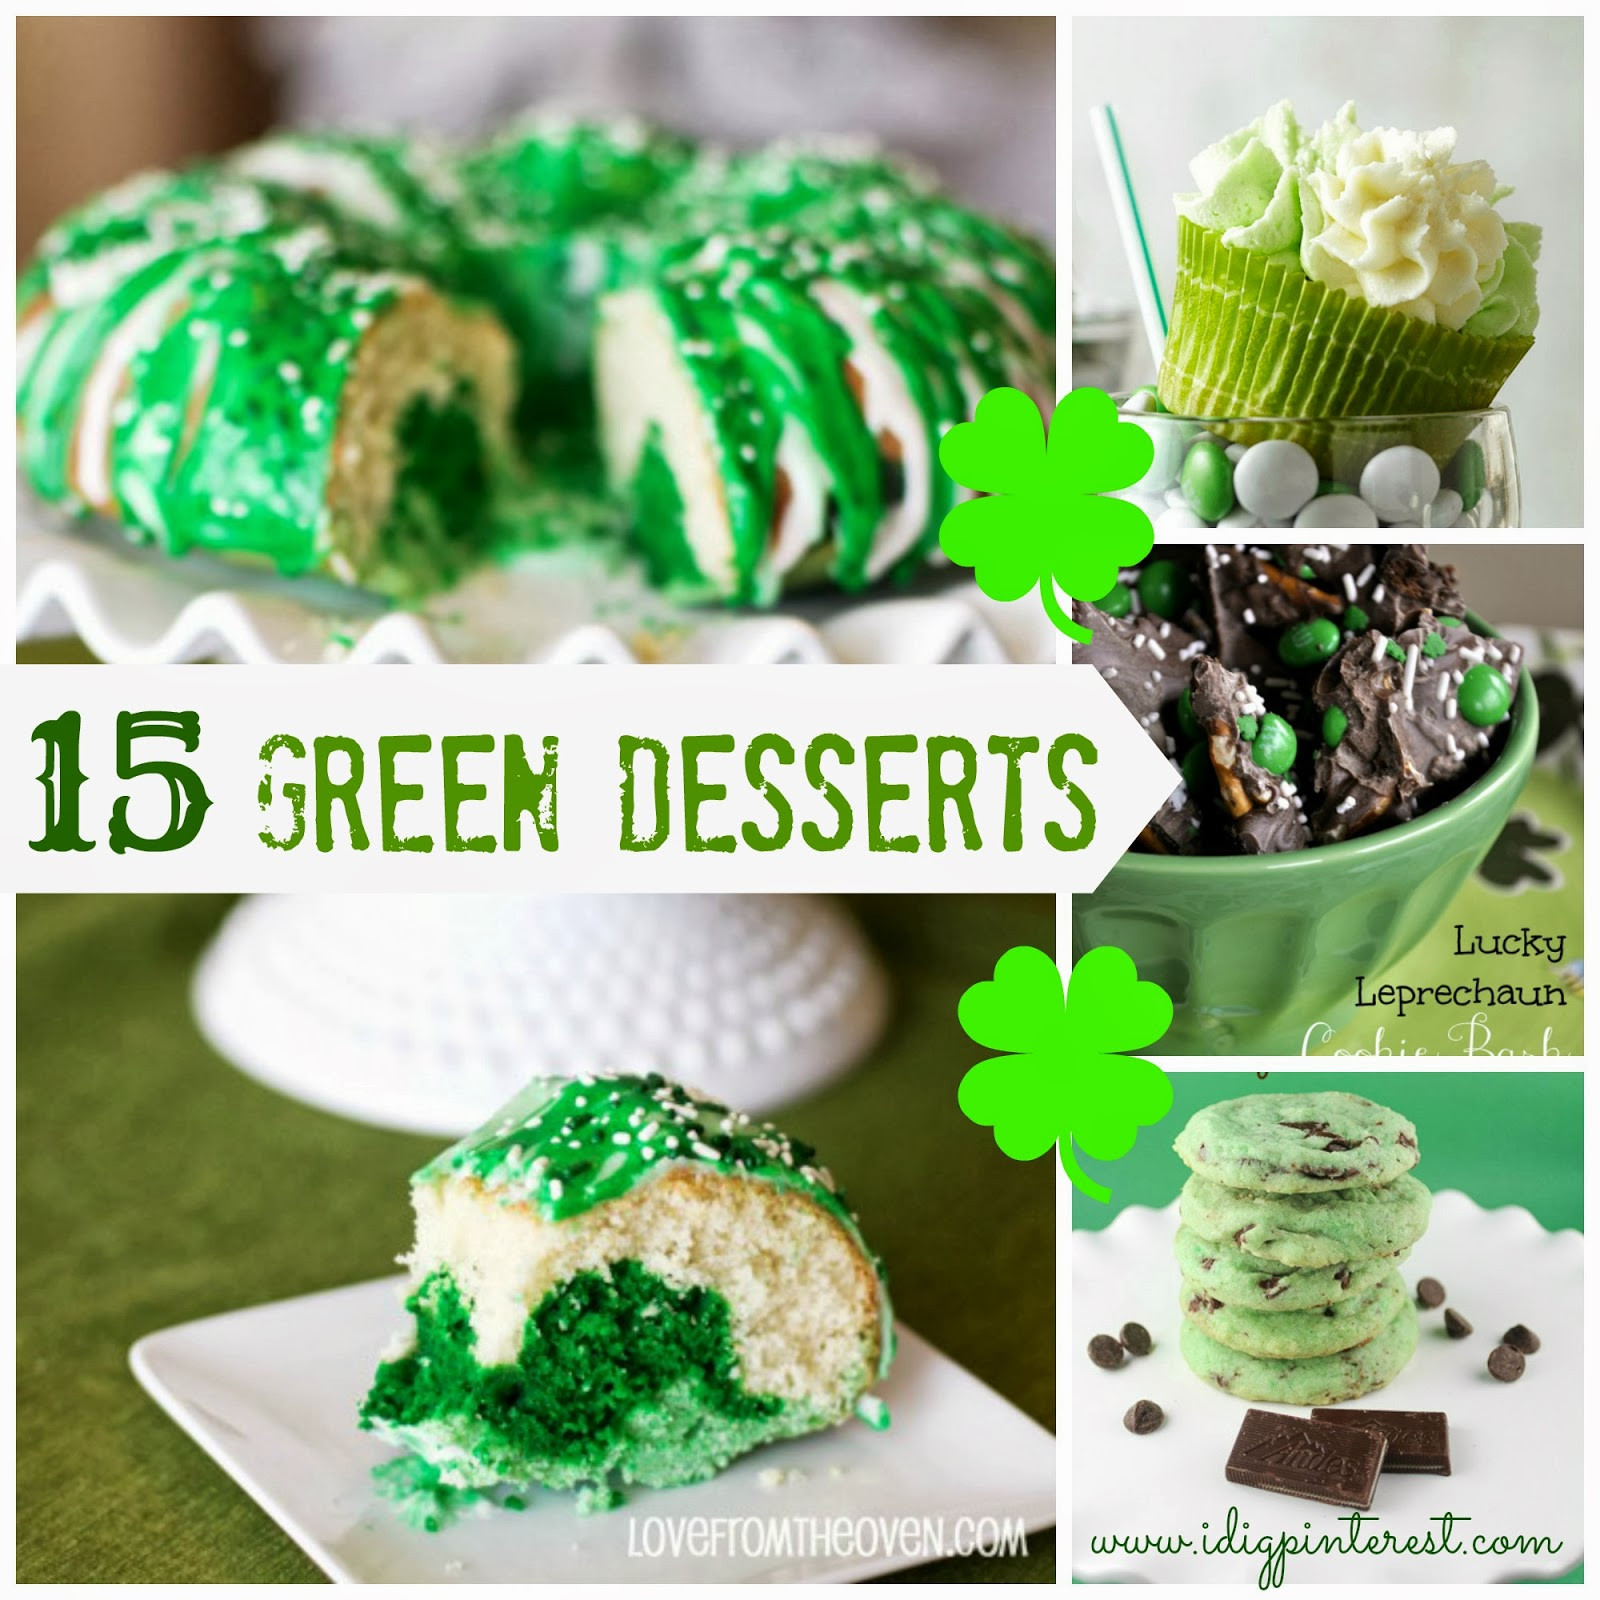 St Patrick Day Desserts Pinterest
 I Dig Pinterest 15 Green Desserts for St Patrick s Day